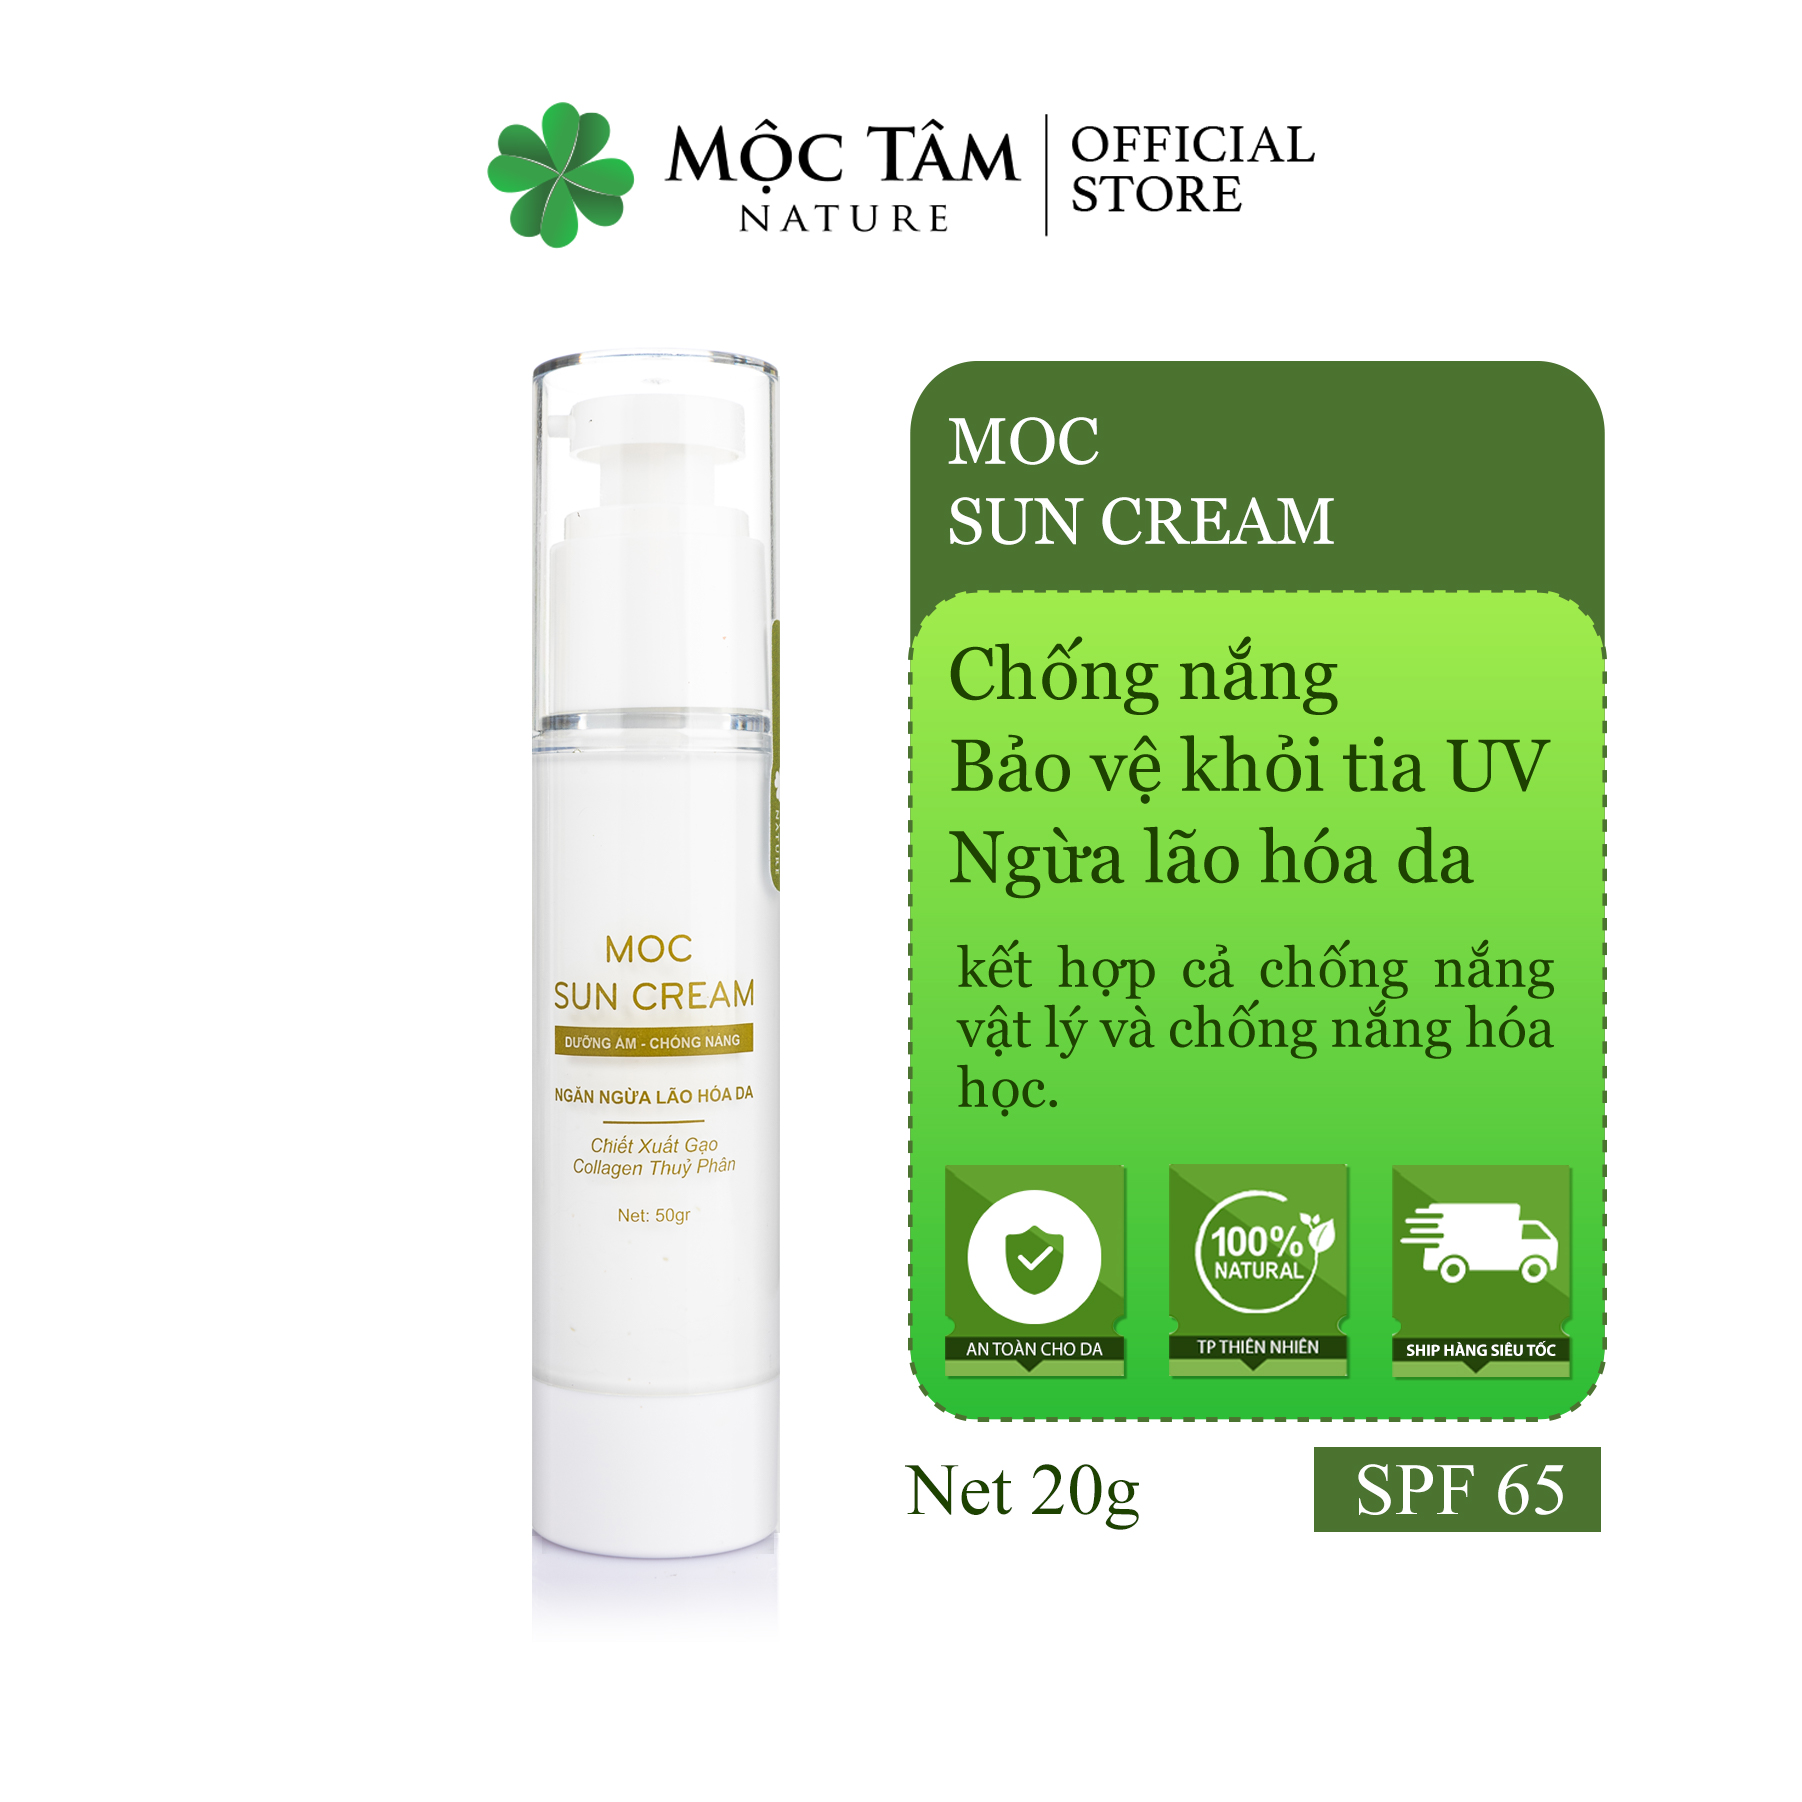 Kem Chống Nắng SPF65 Moc Sun Cream 50g - Ngăn Chặn Tia UV, Dưỡng Ẩm, Ngừa Lão Hóa